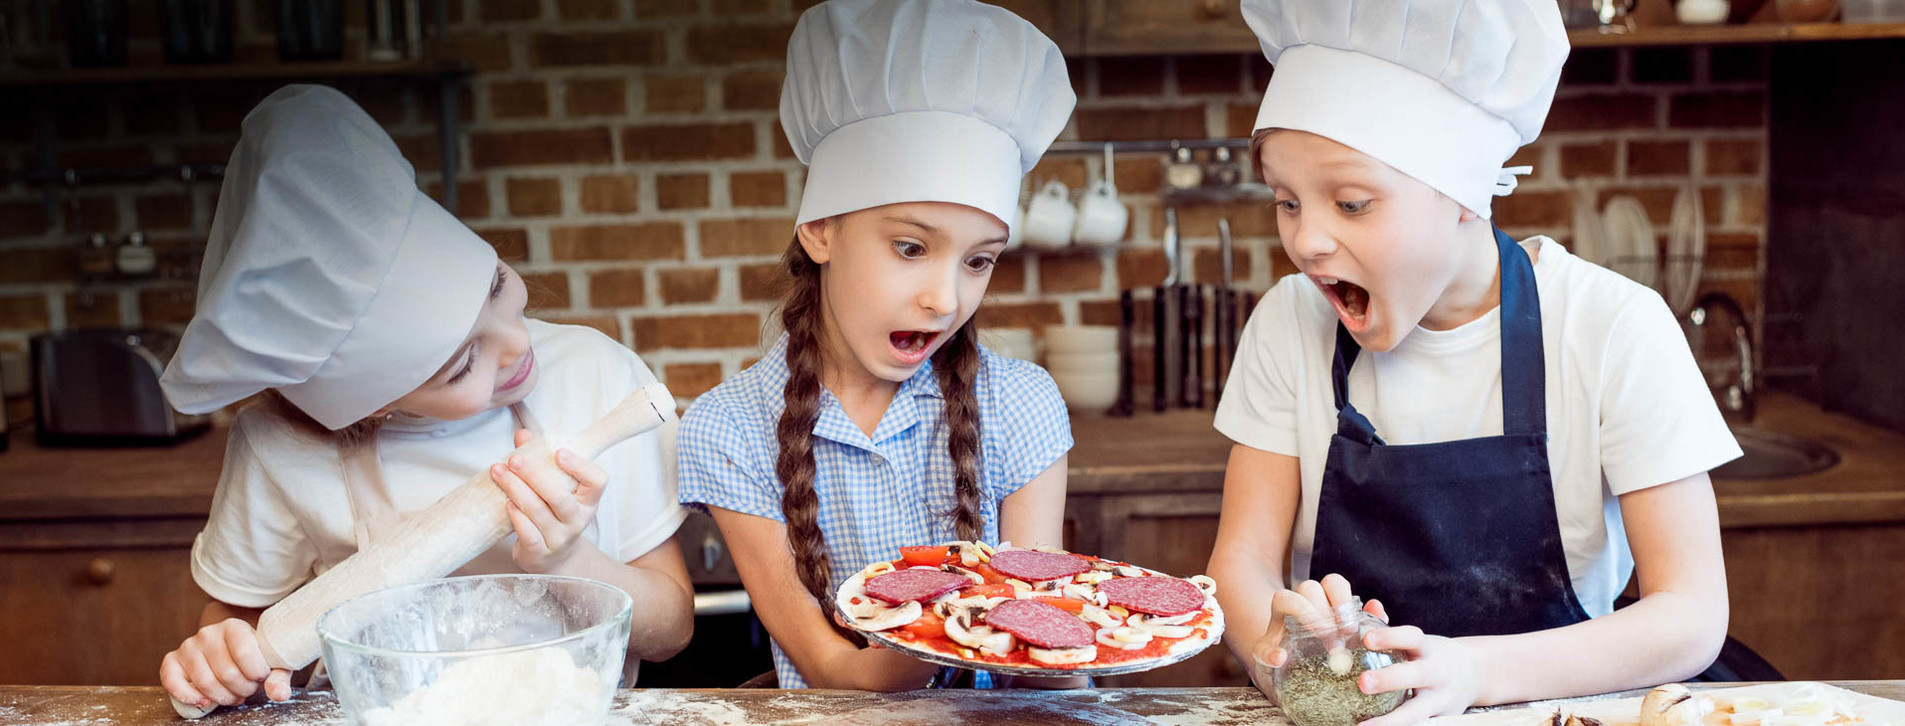 Фото 1 - Детский мастер-класс пиццы для двоих